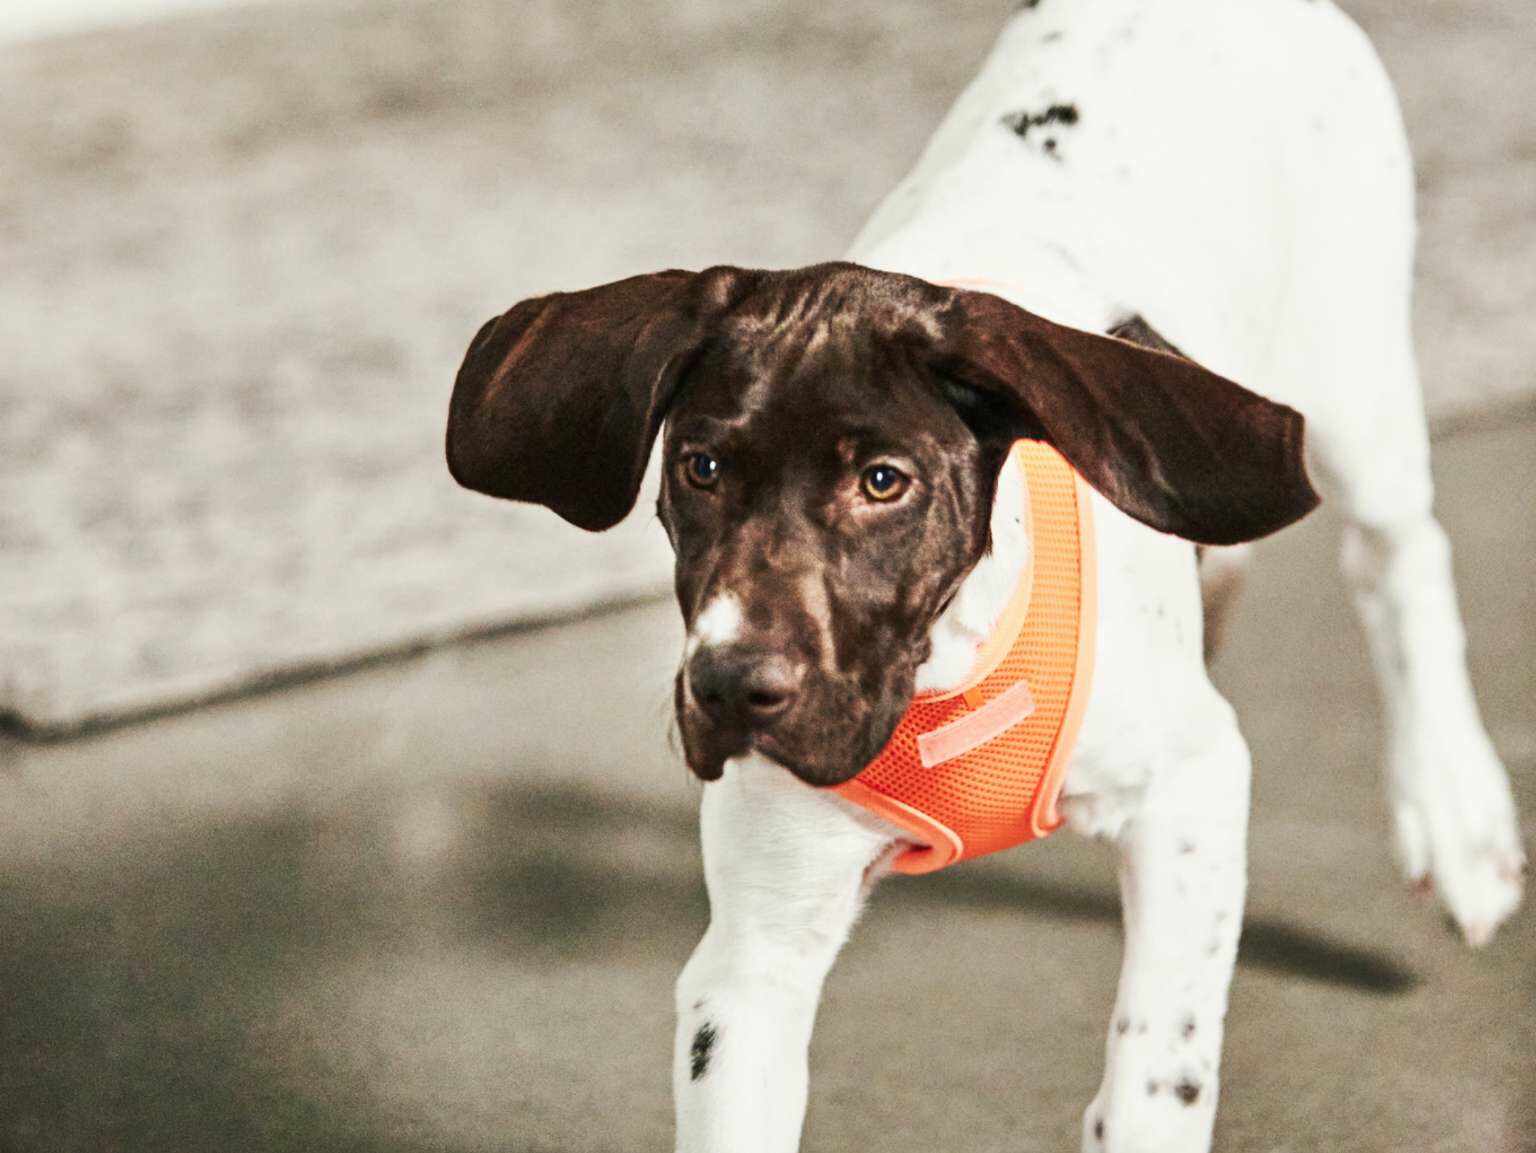 A puppy wearing an orange vest